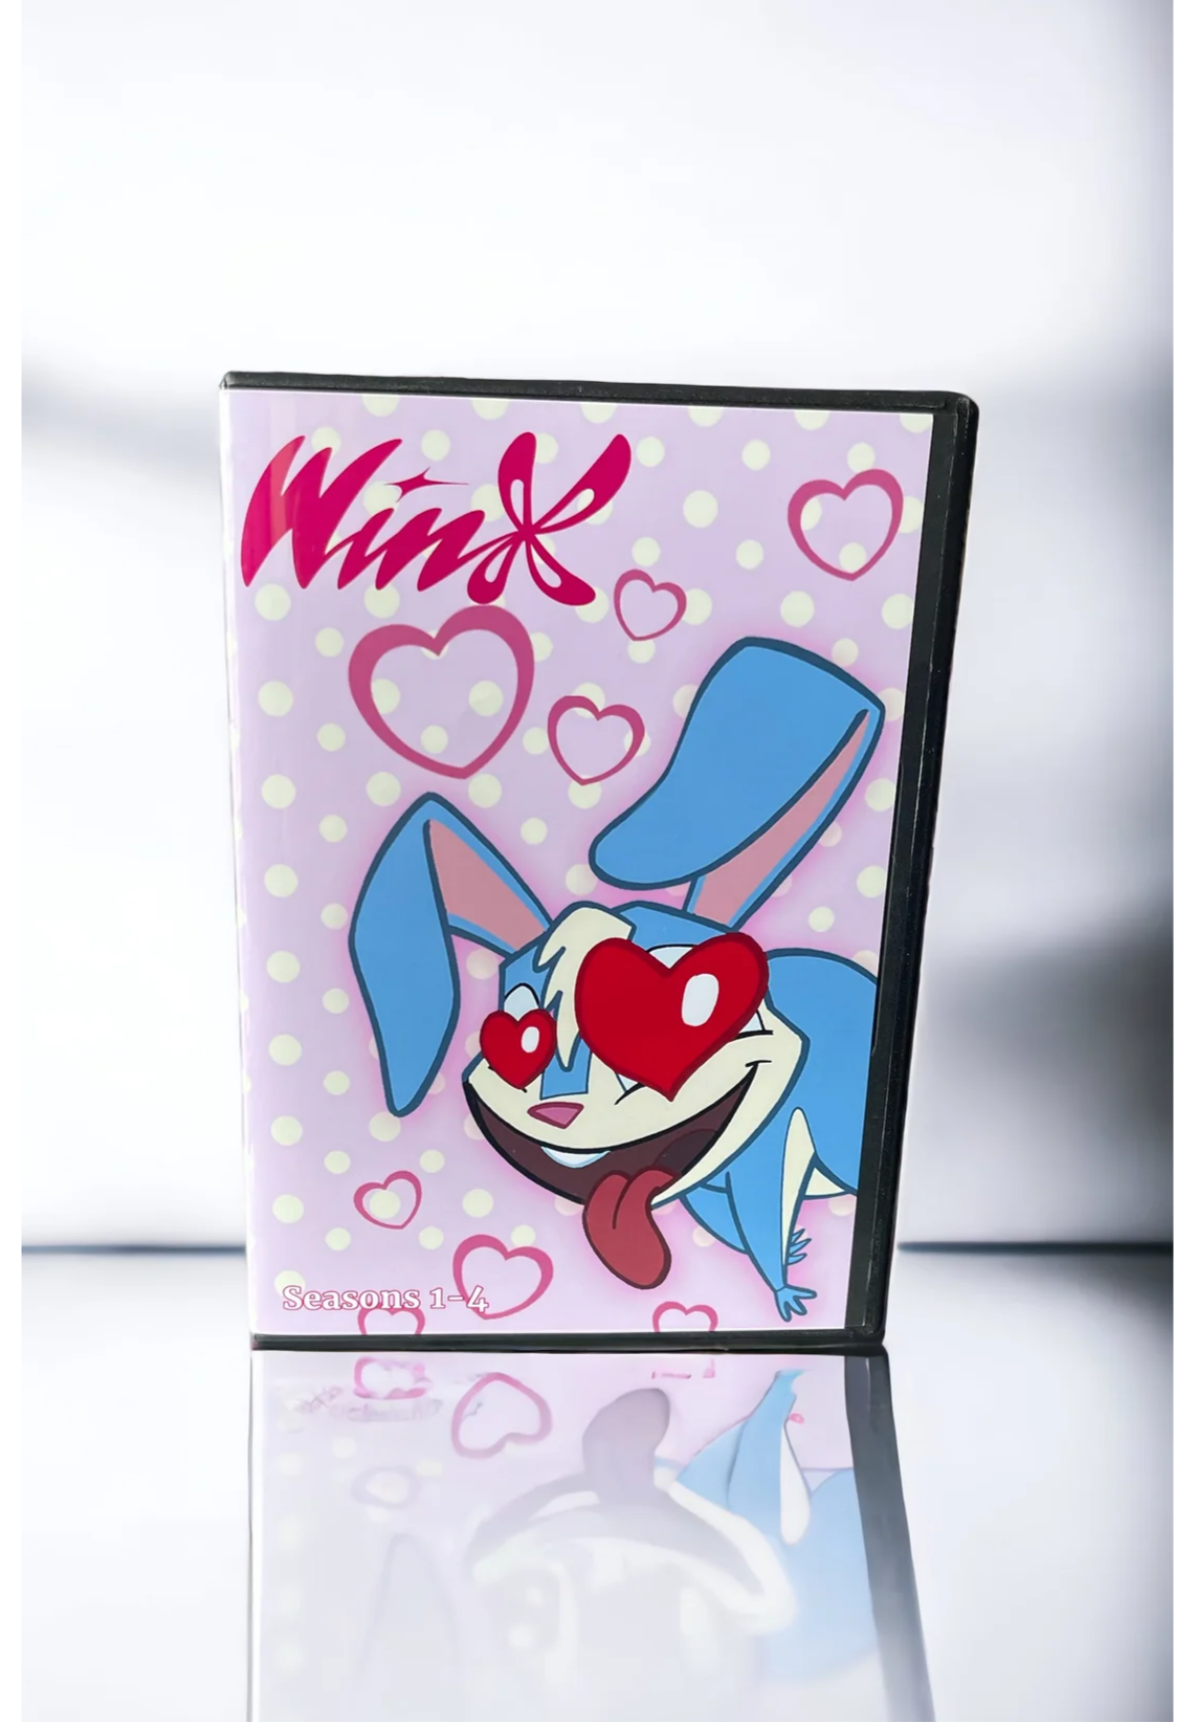 Winx Club Seasons 1-4 DVD Boxset